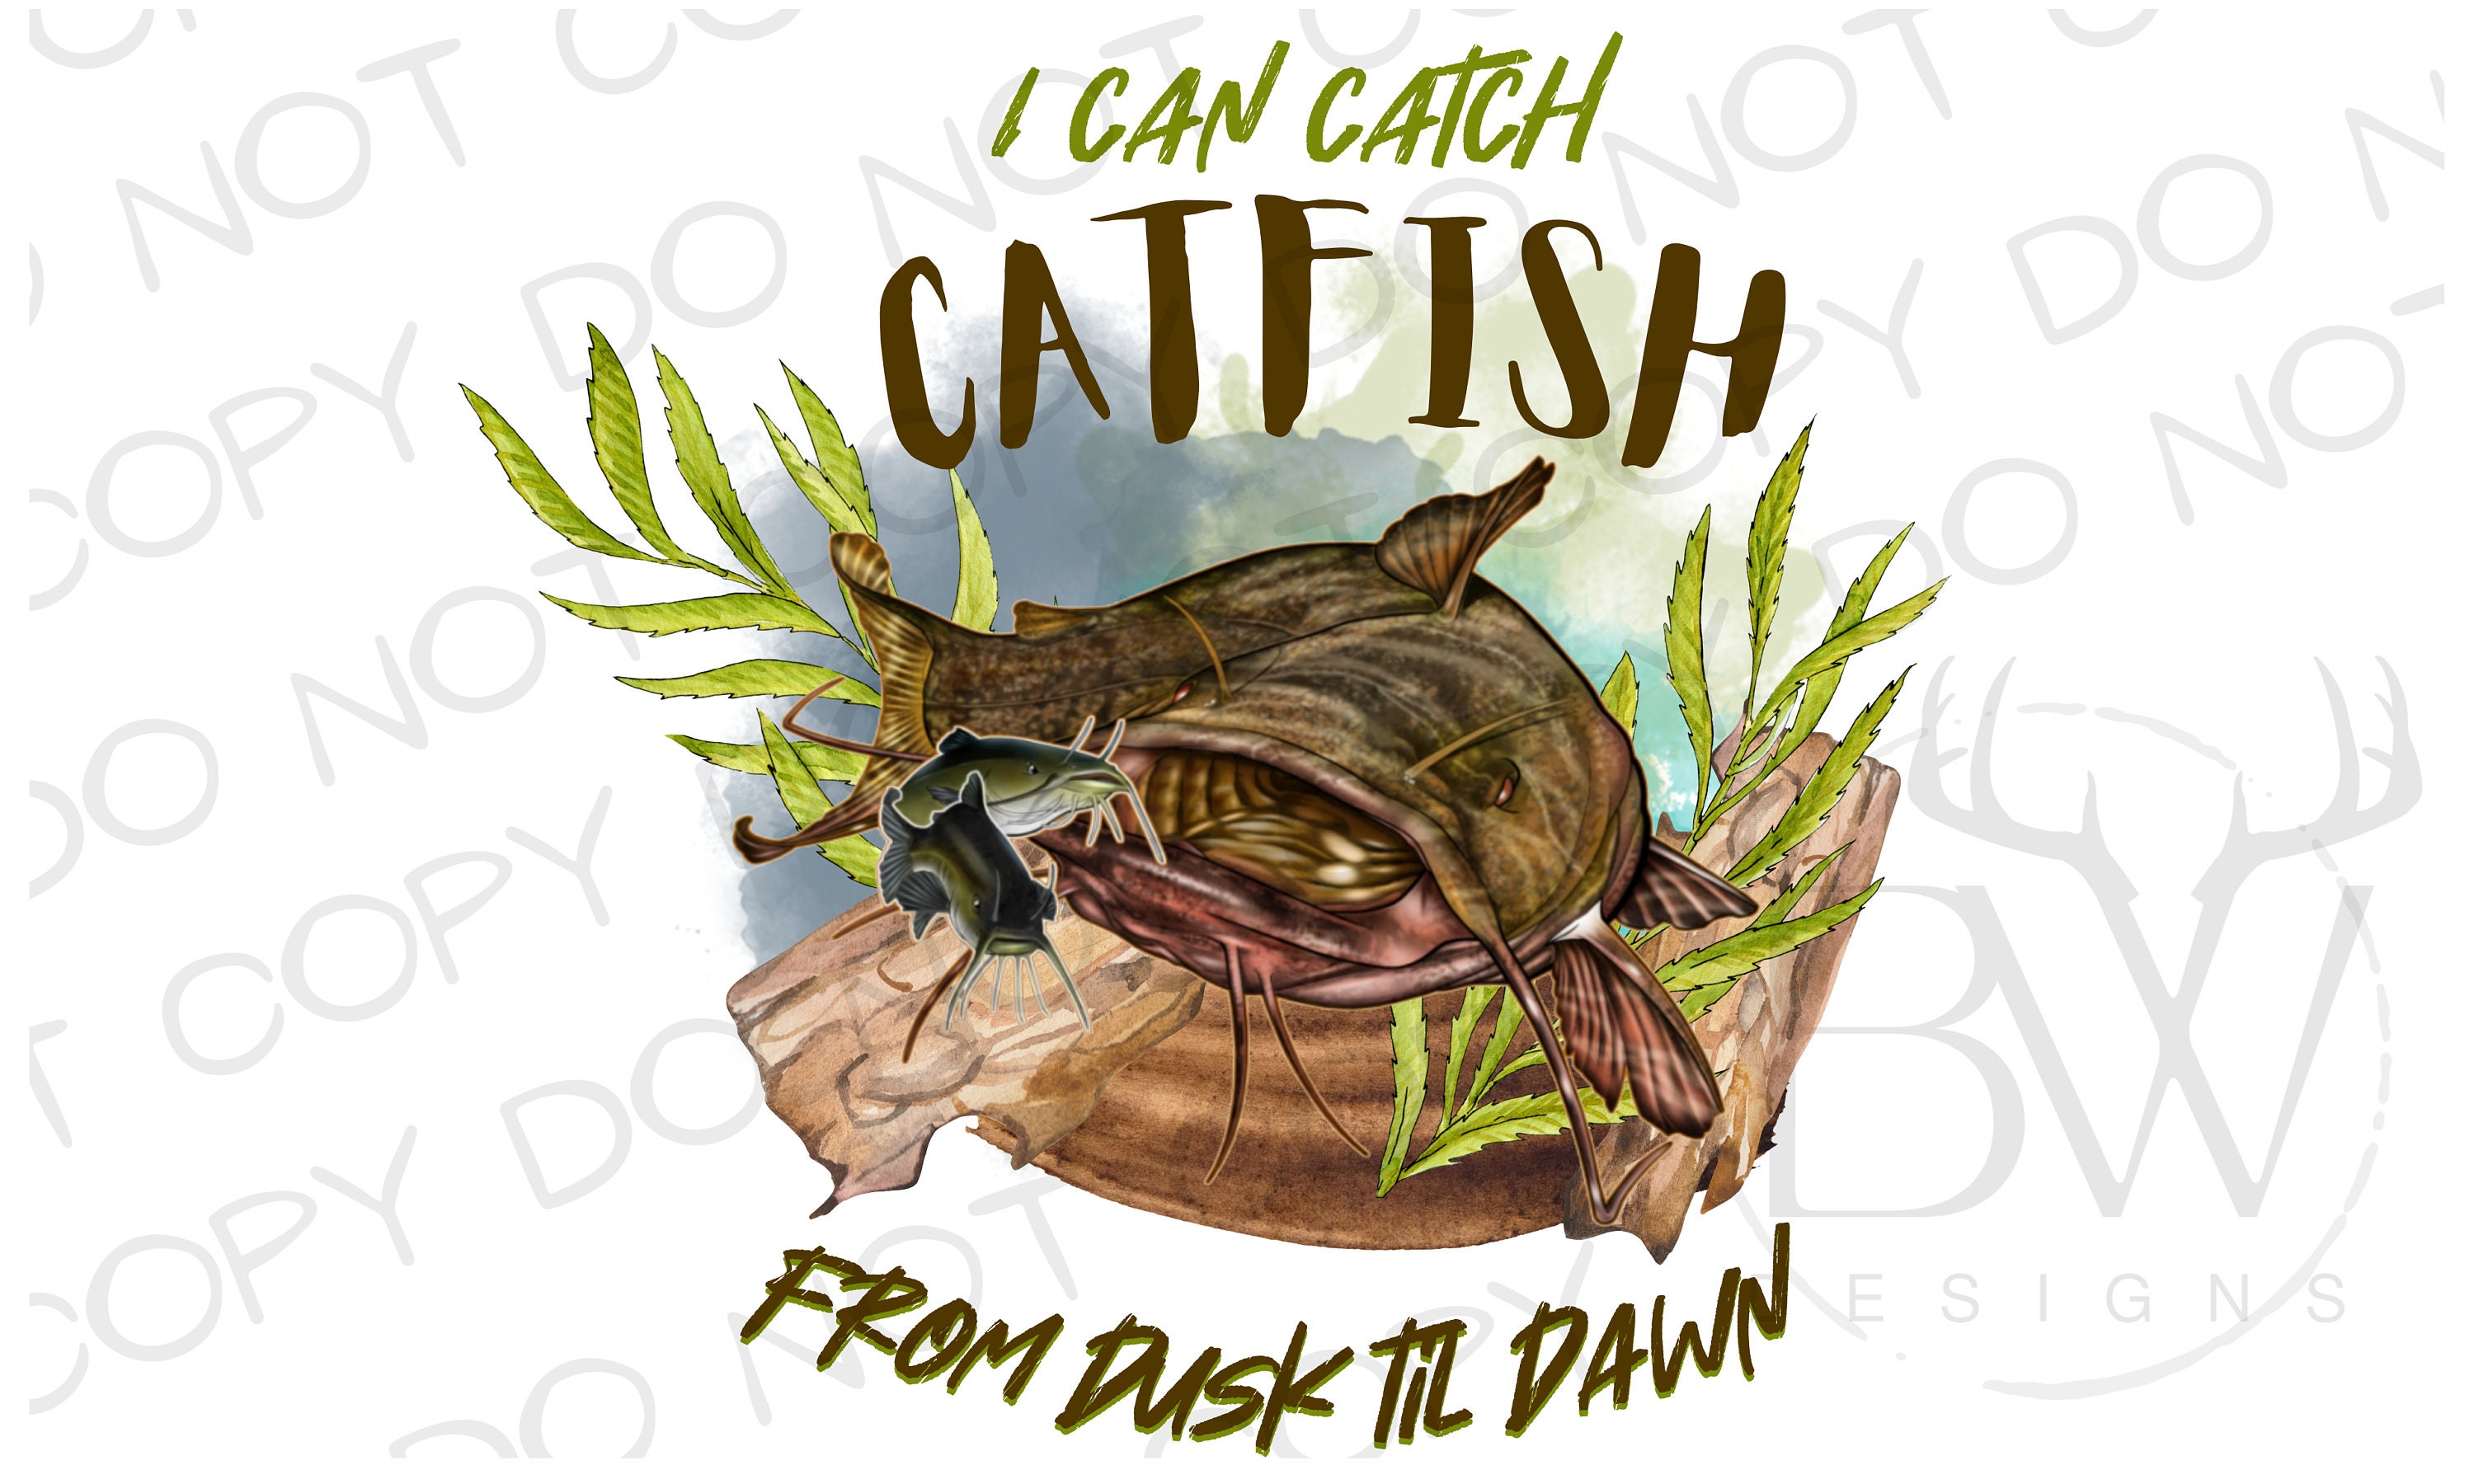 Catfish Fishing Pole 